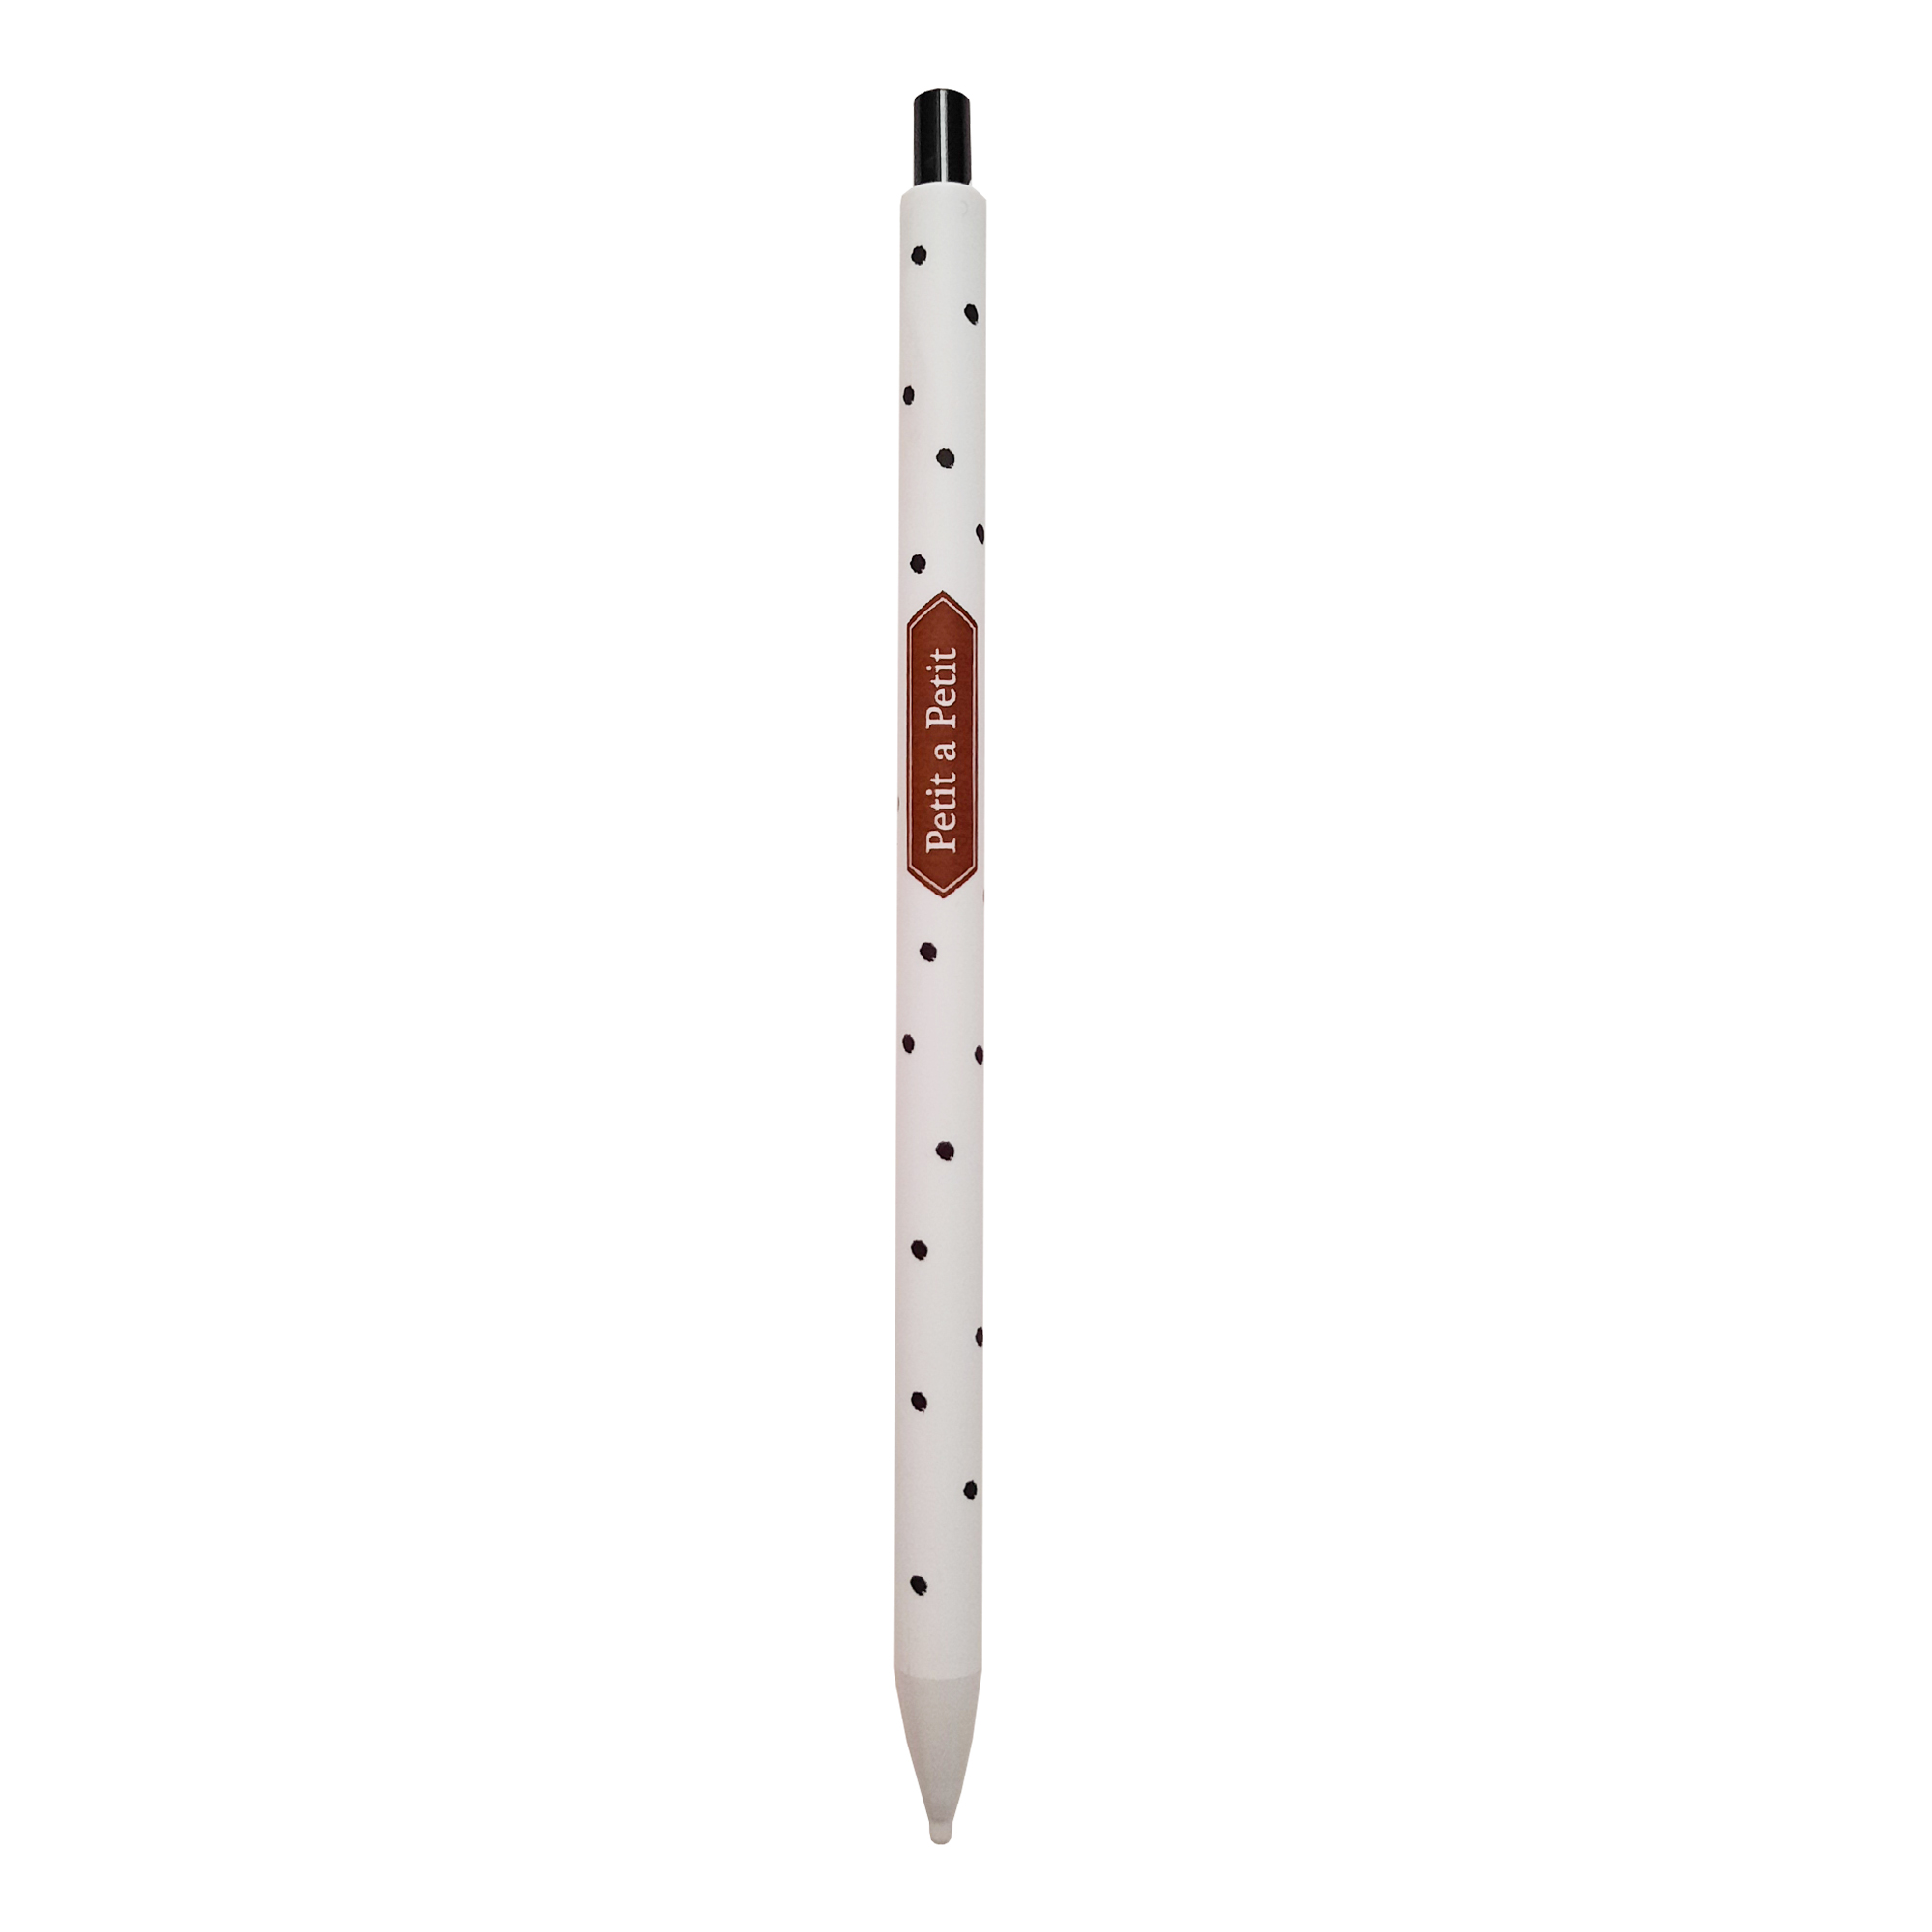 مداد نوکی 0.5 میلی متری مدل Petit a petit